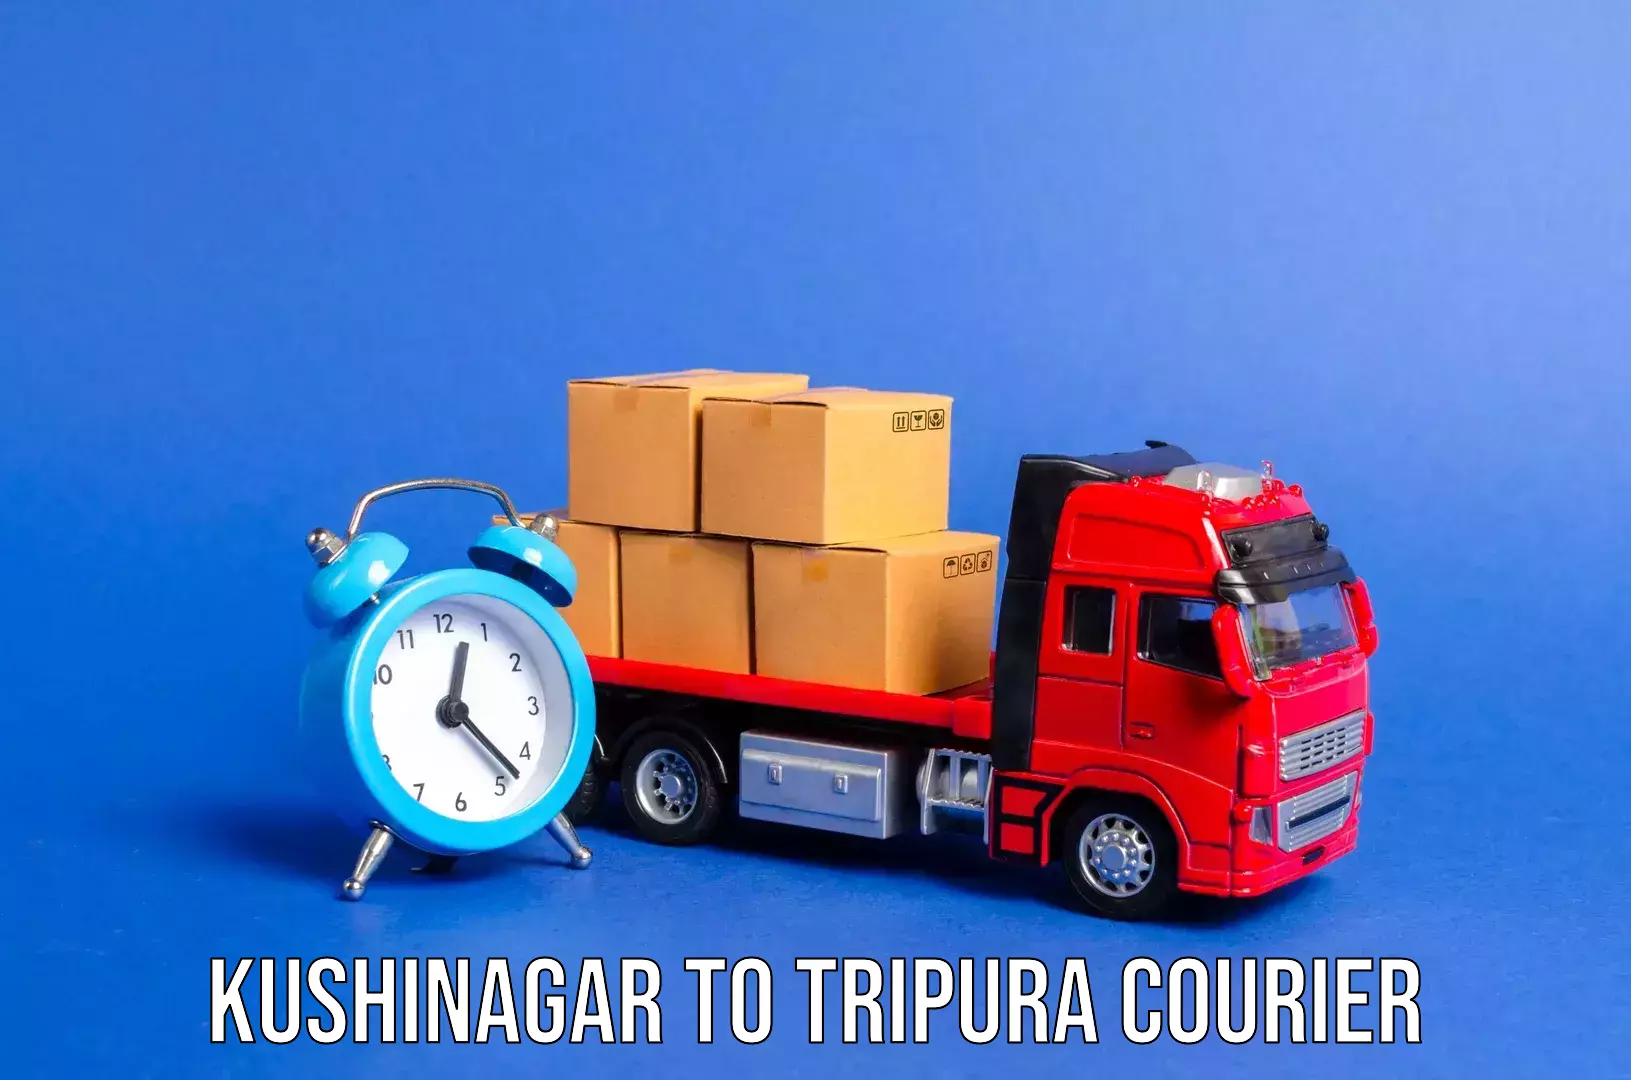 Luggage transport service Kushinagar to Udaipur Tripura